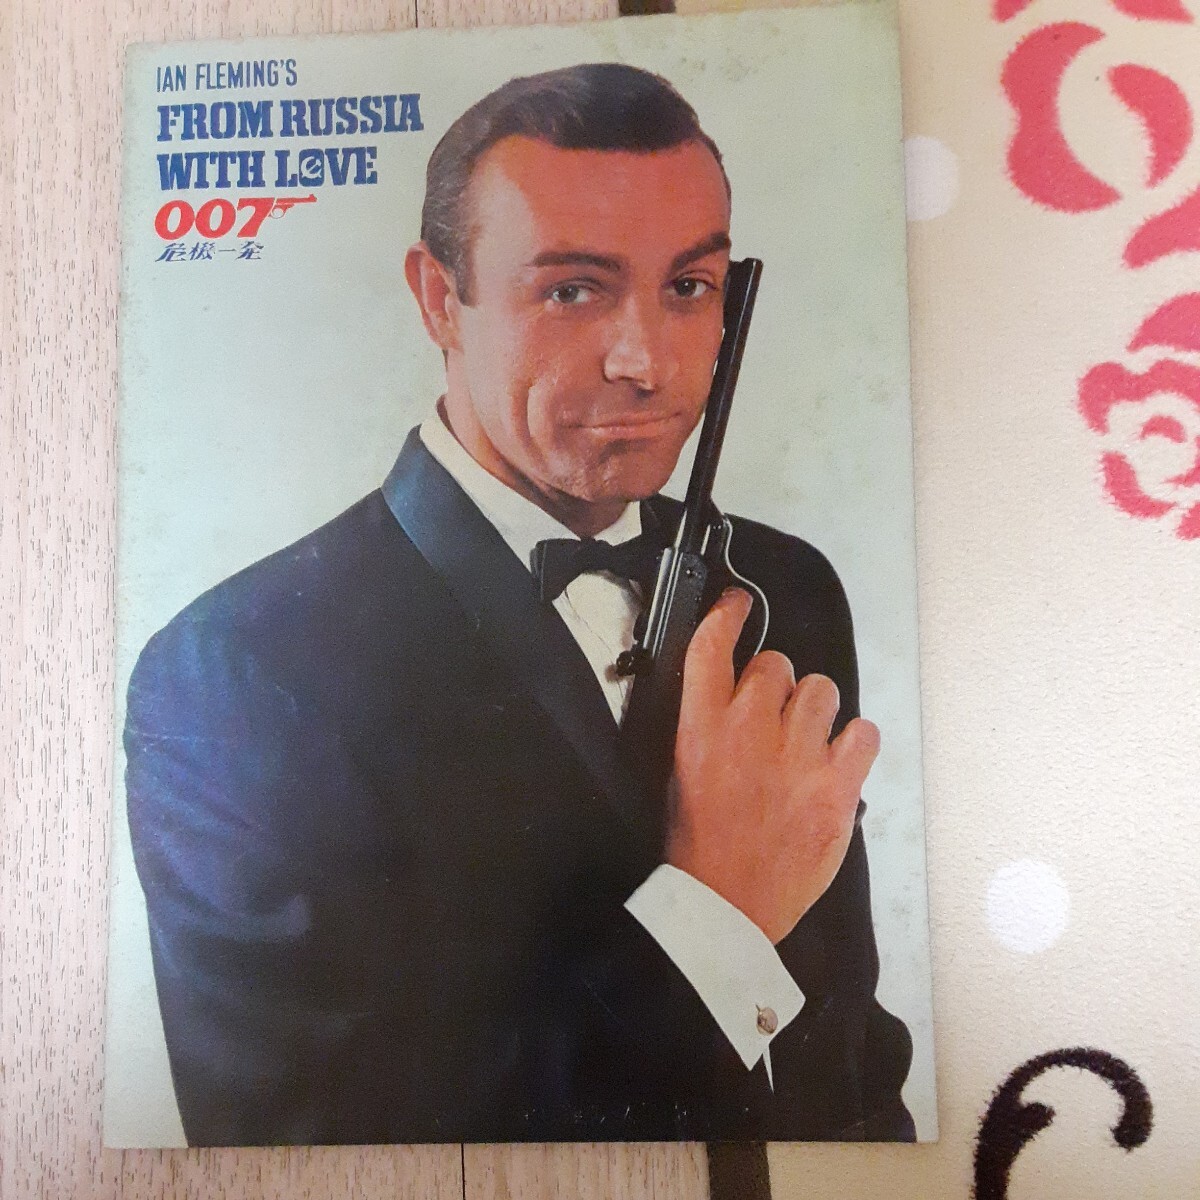 映画パンフレット 007危機一発の画像1